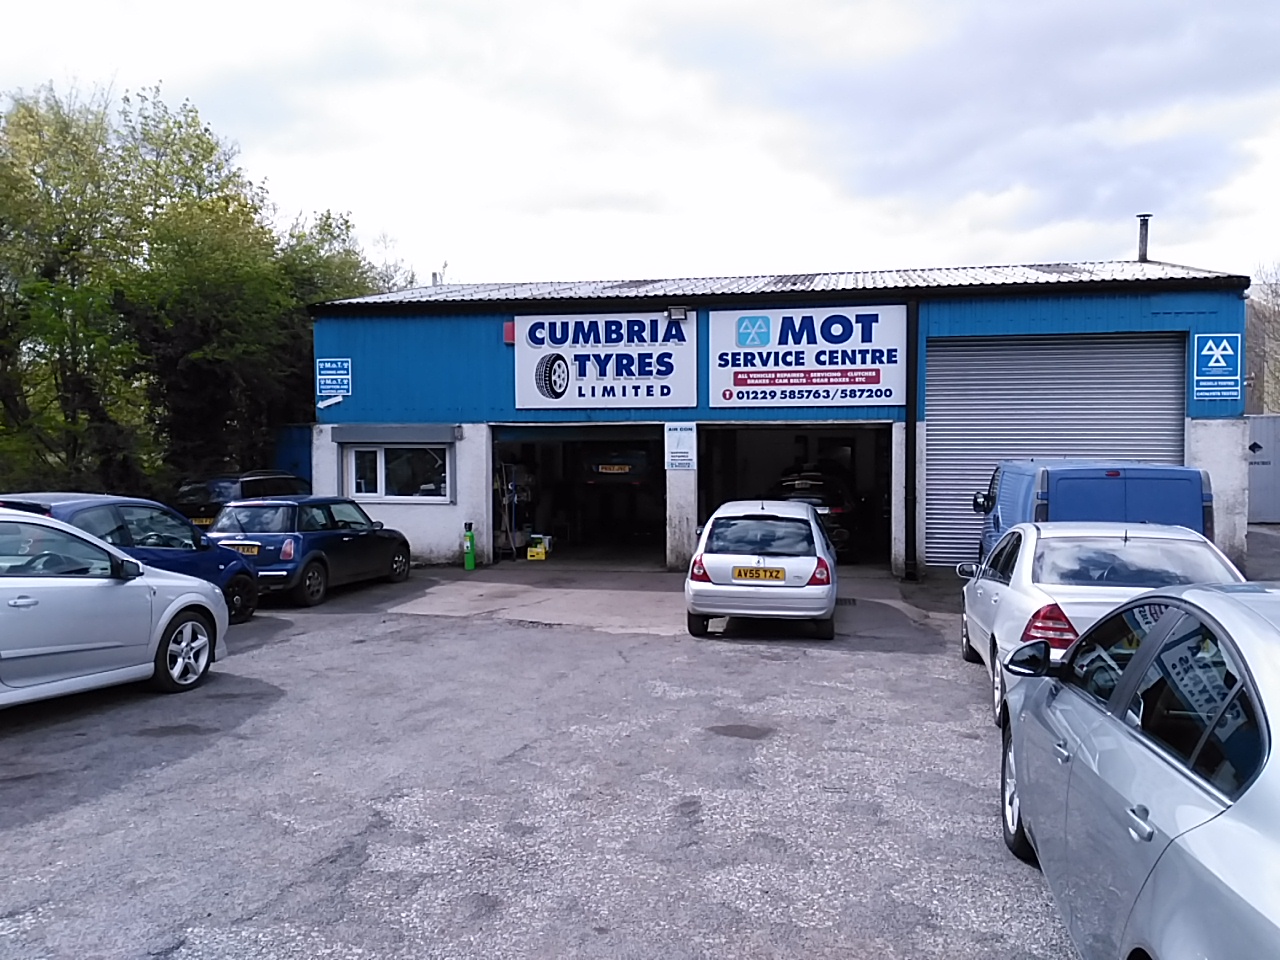 Cumbria Tyres Ltd